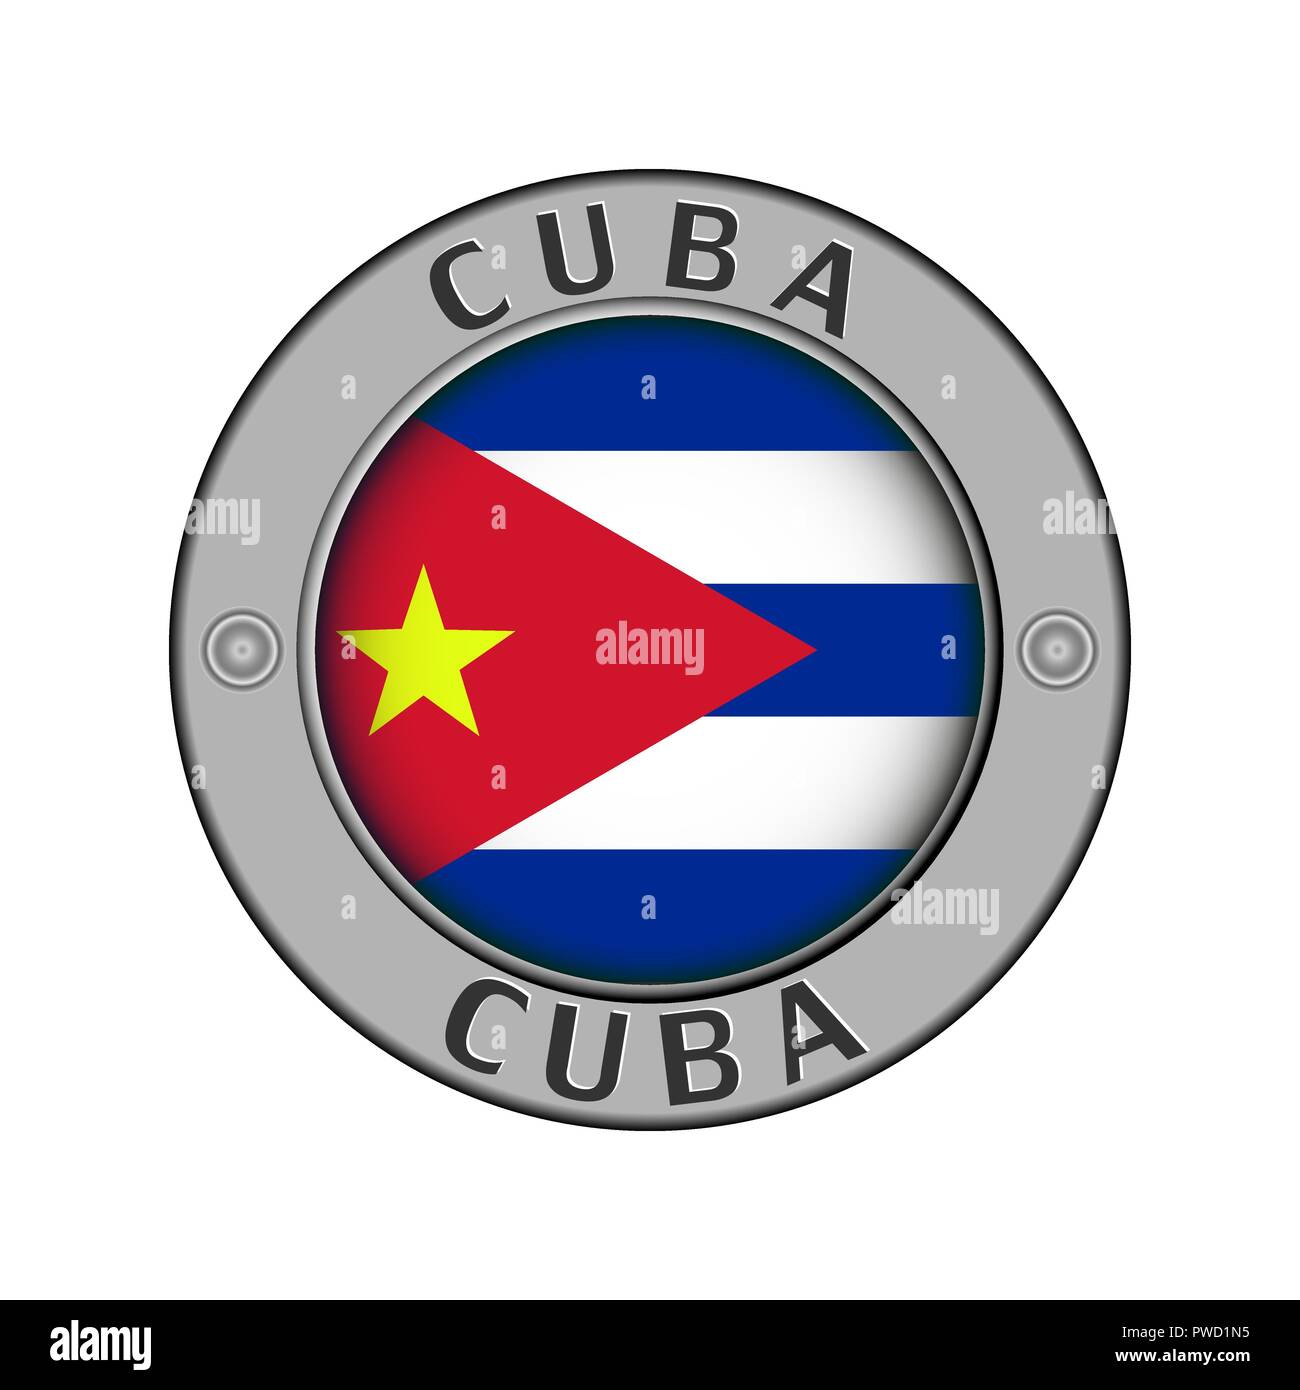 Rotondo di metallo medaglione con il nome del paese di Cuba e un indicatore rotondo nel centro Illustrazione Vettoriale